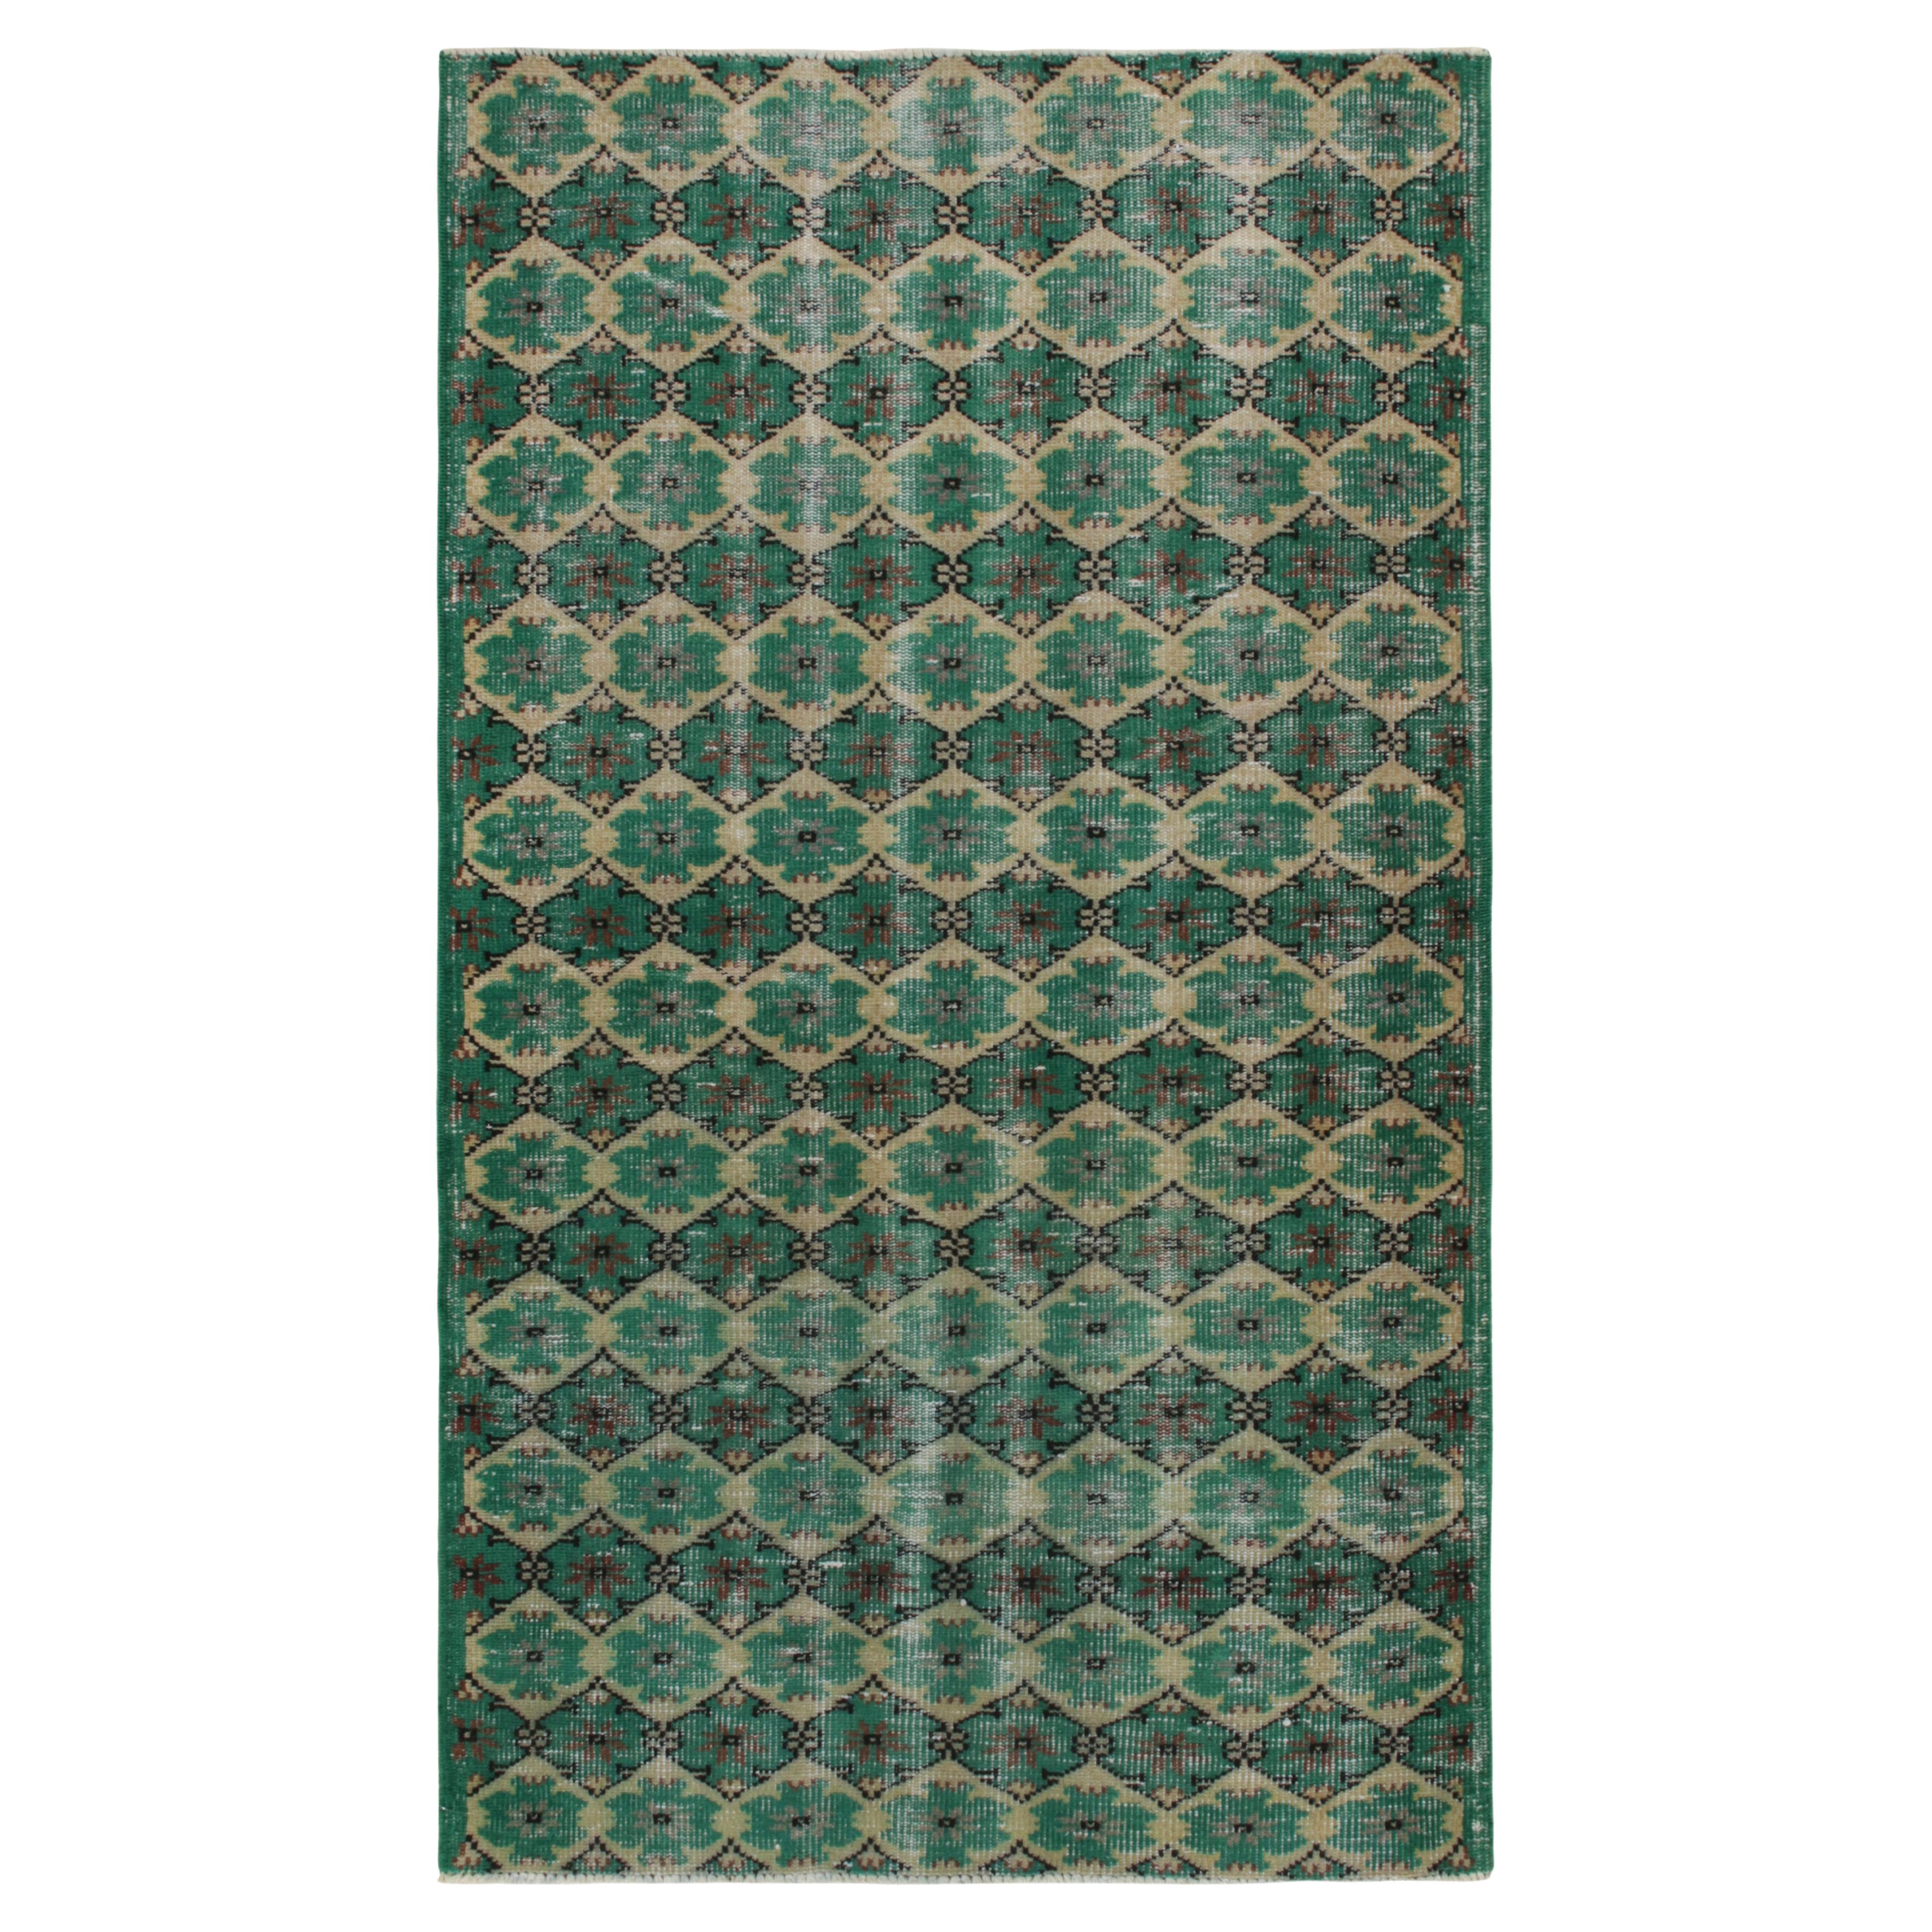 1960s Vintage Distressed Rug in Teal Green Lattice Patterns by Rug & Kilim